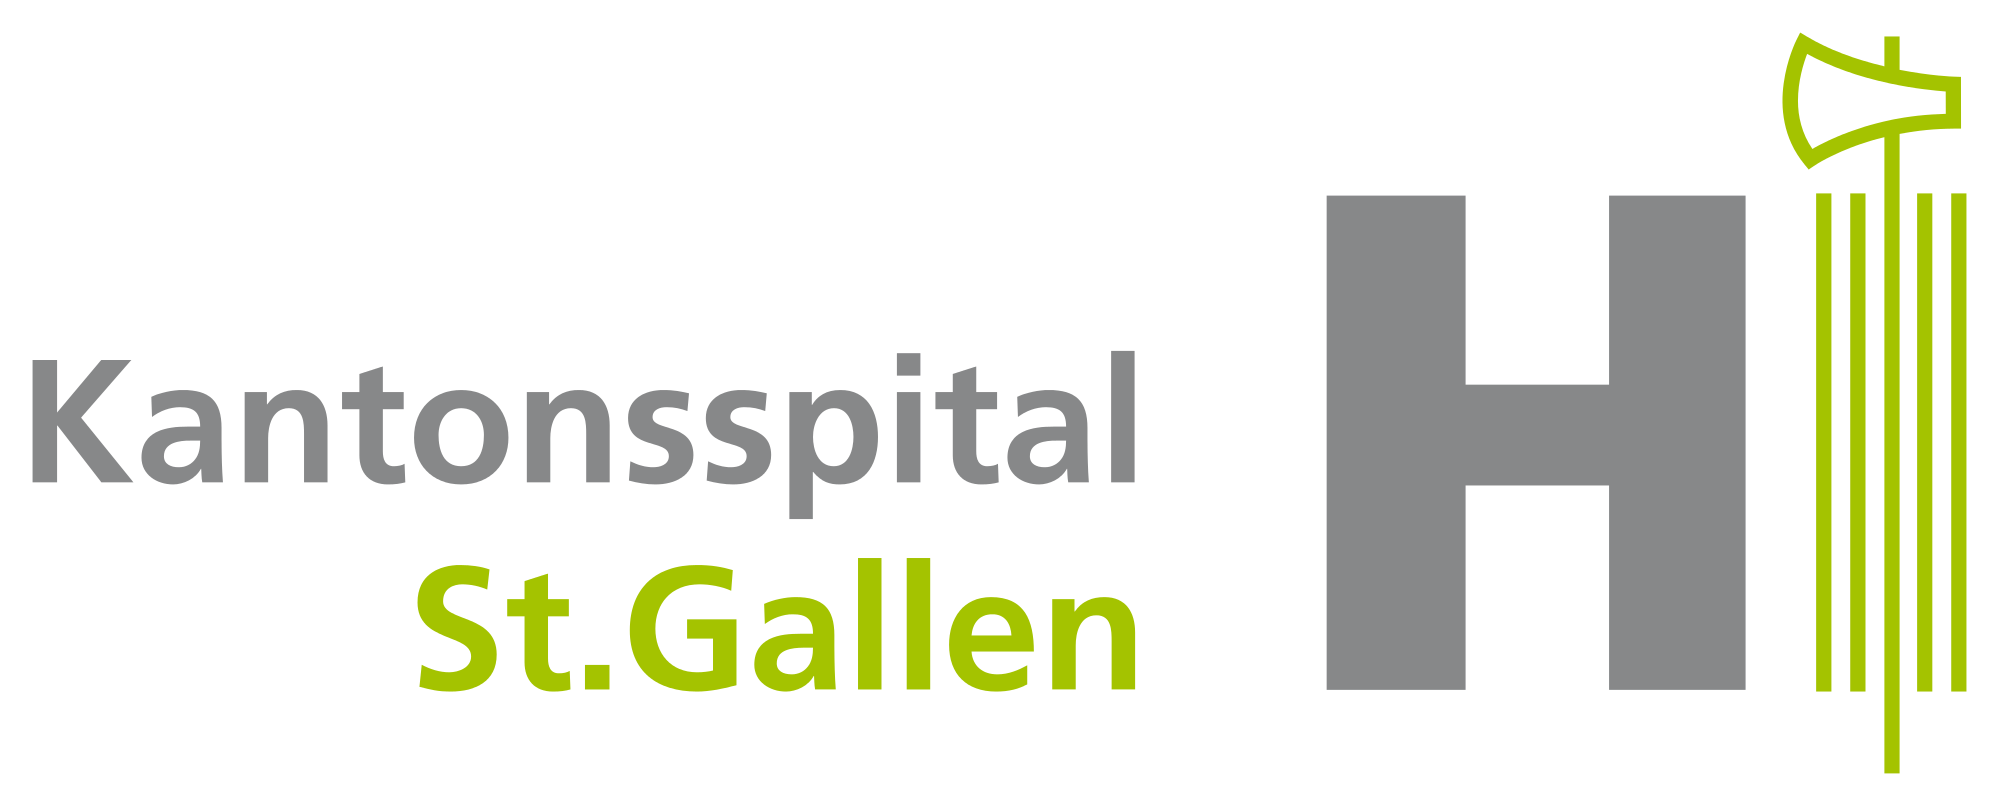 Kantonsspital St. Gallen; KSSG; Referenz; Kunde; Seminar; Manufaktur